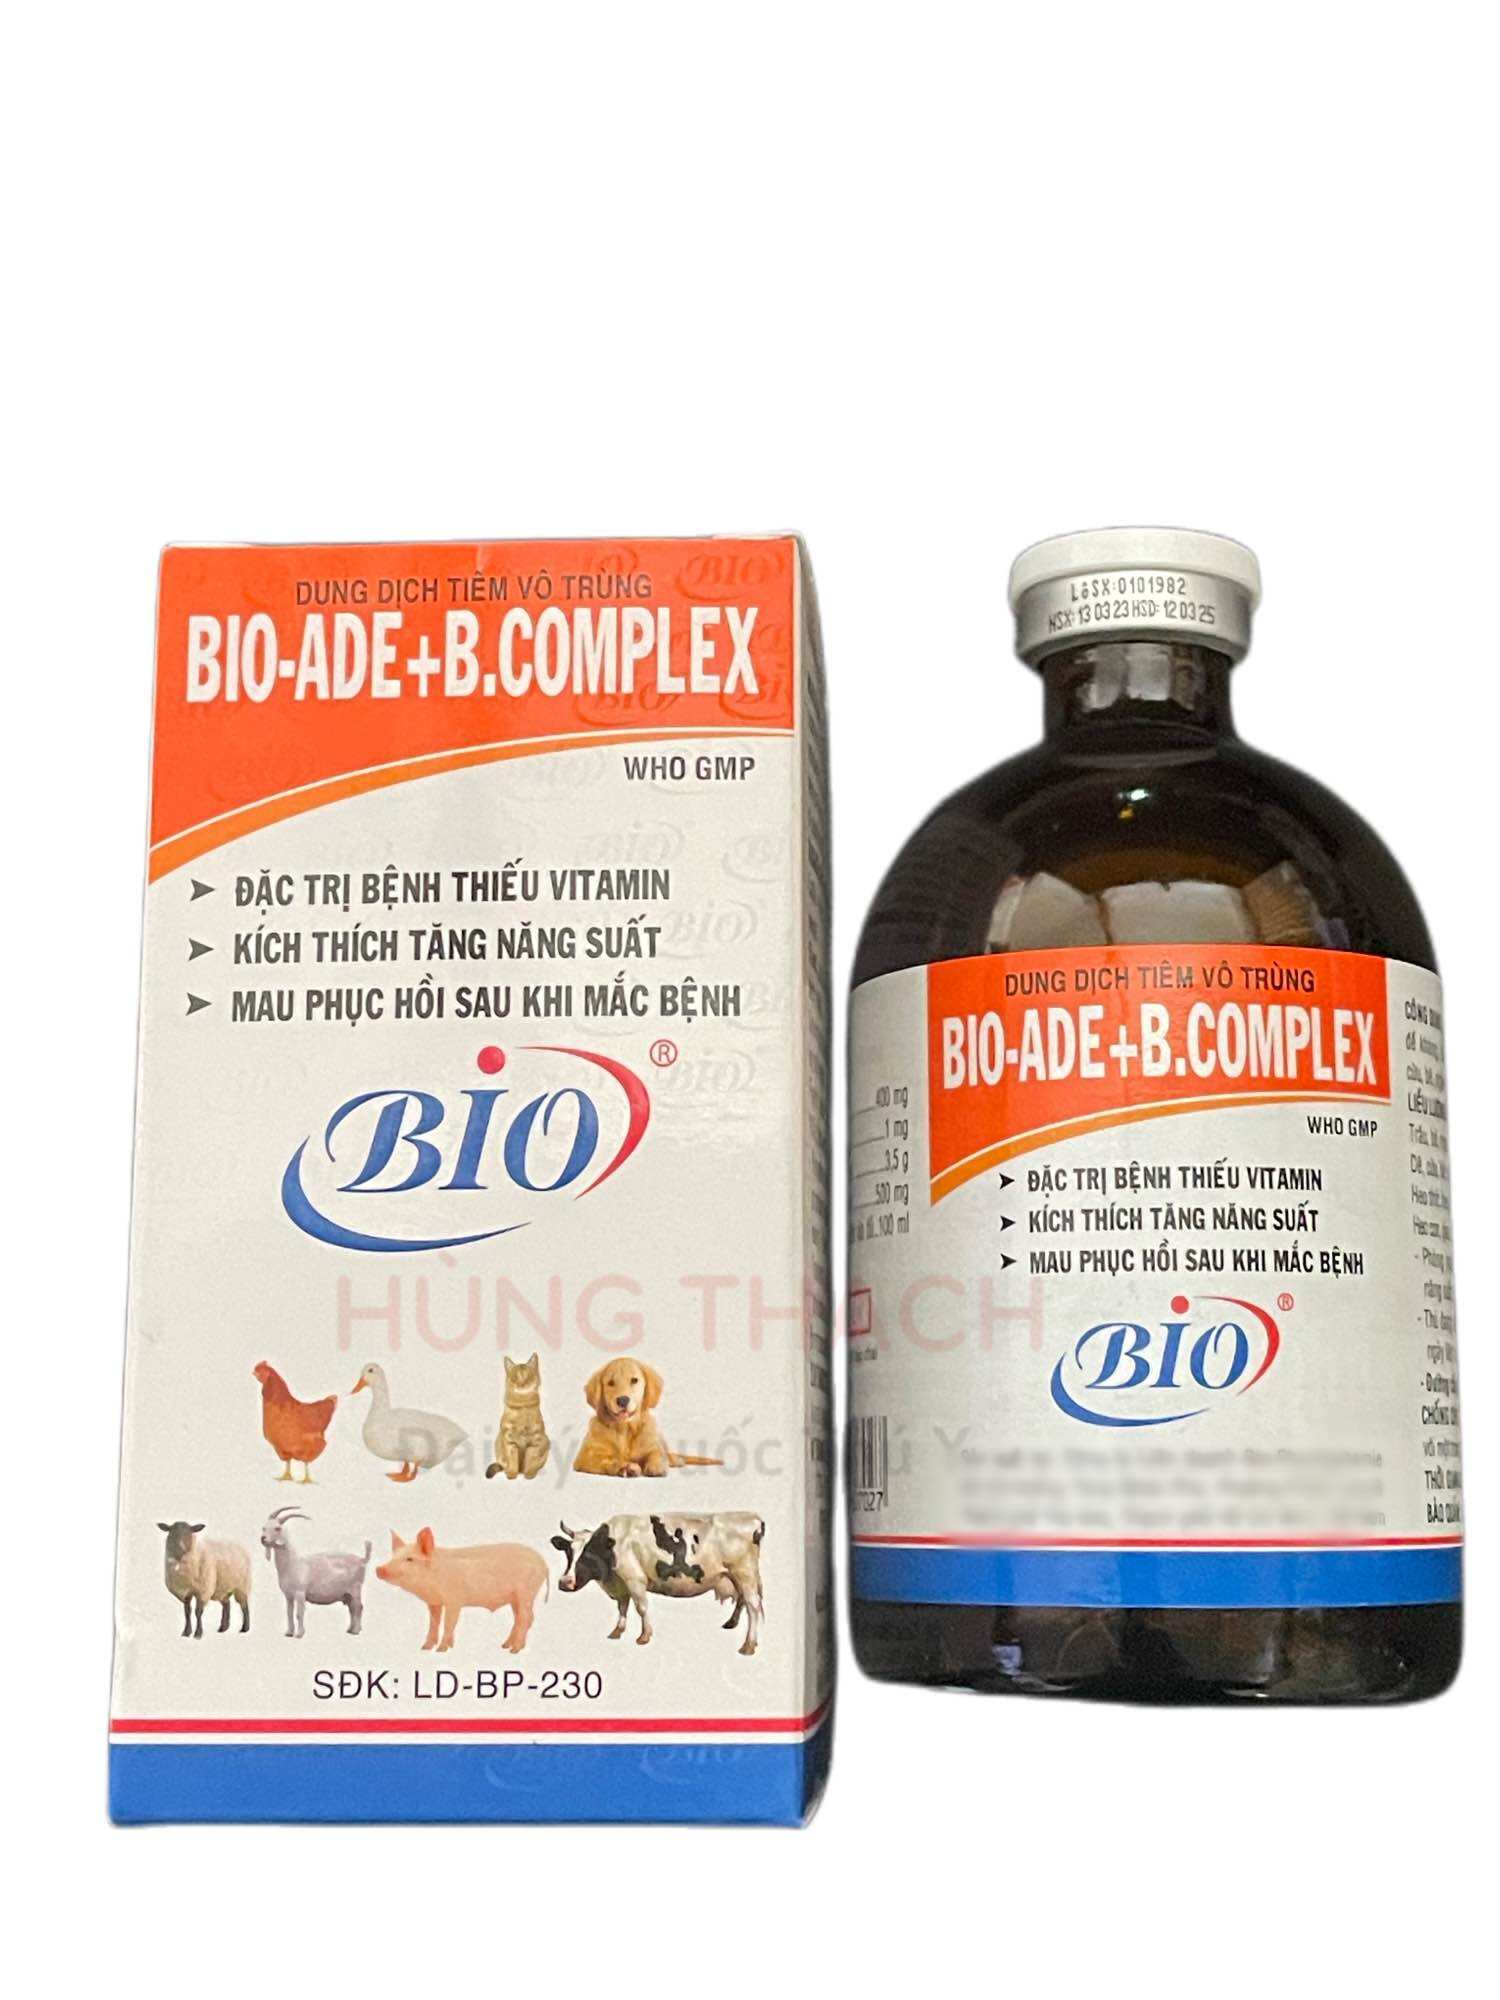 Bio ADE BCOMPLEX 100ml [HSD 2025] đặc trị bệnh thiếu vitamin, kích thích tăng năng suất, mau hồi phục sau mắc bệnh, kích thích thèm ăn, chậm lớn cho vật nuôi gia súc, gia cầm, chó và mèo